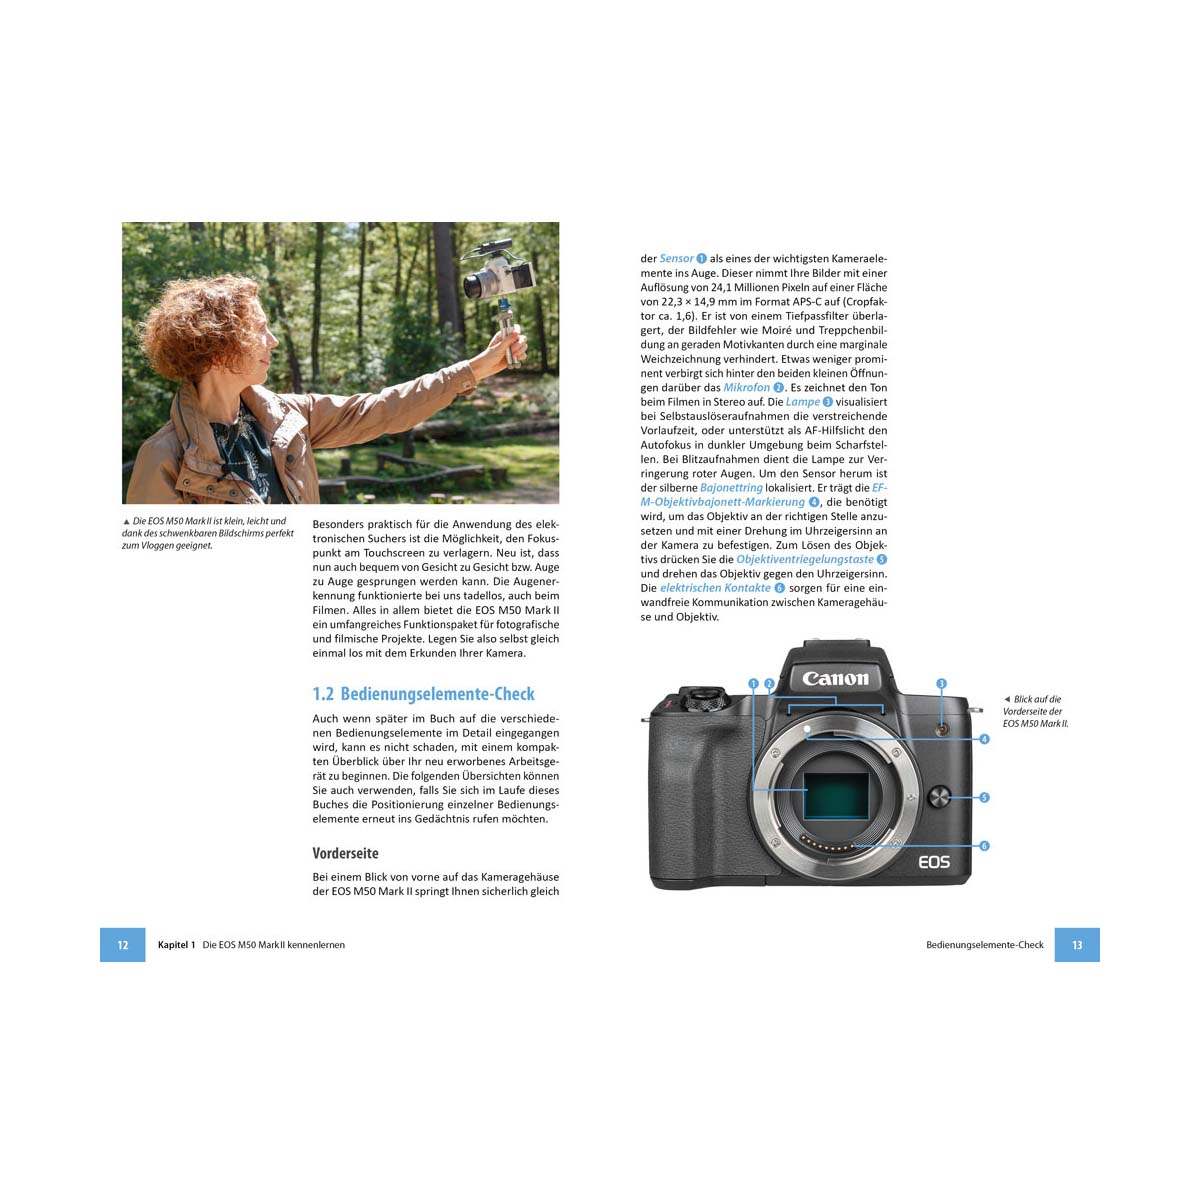 Canon EOS M50 Mark II Kamera! Das umfangreiche Ihrer Praxisbuch - zu